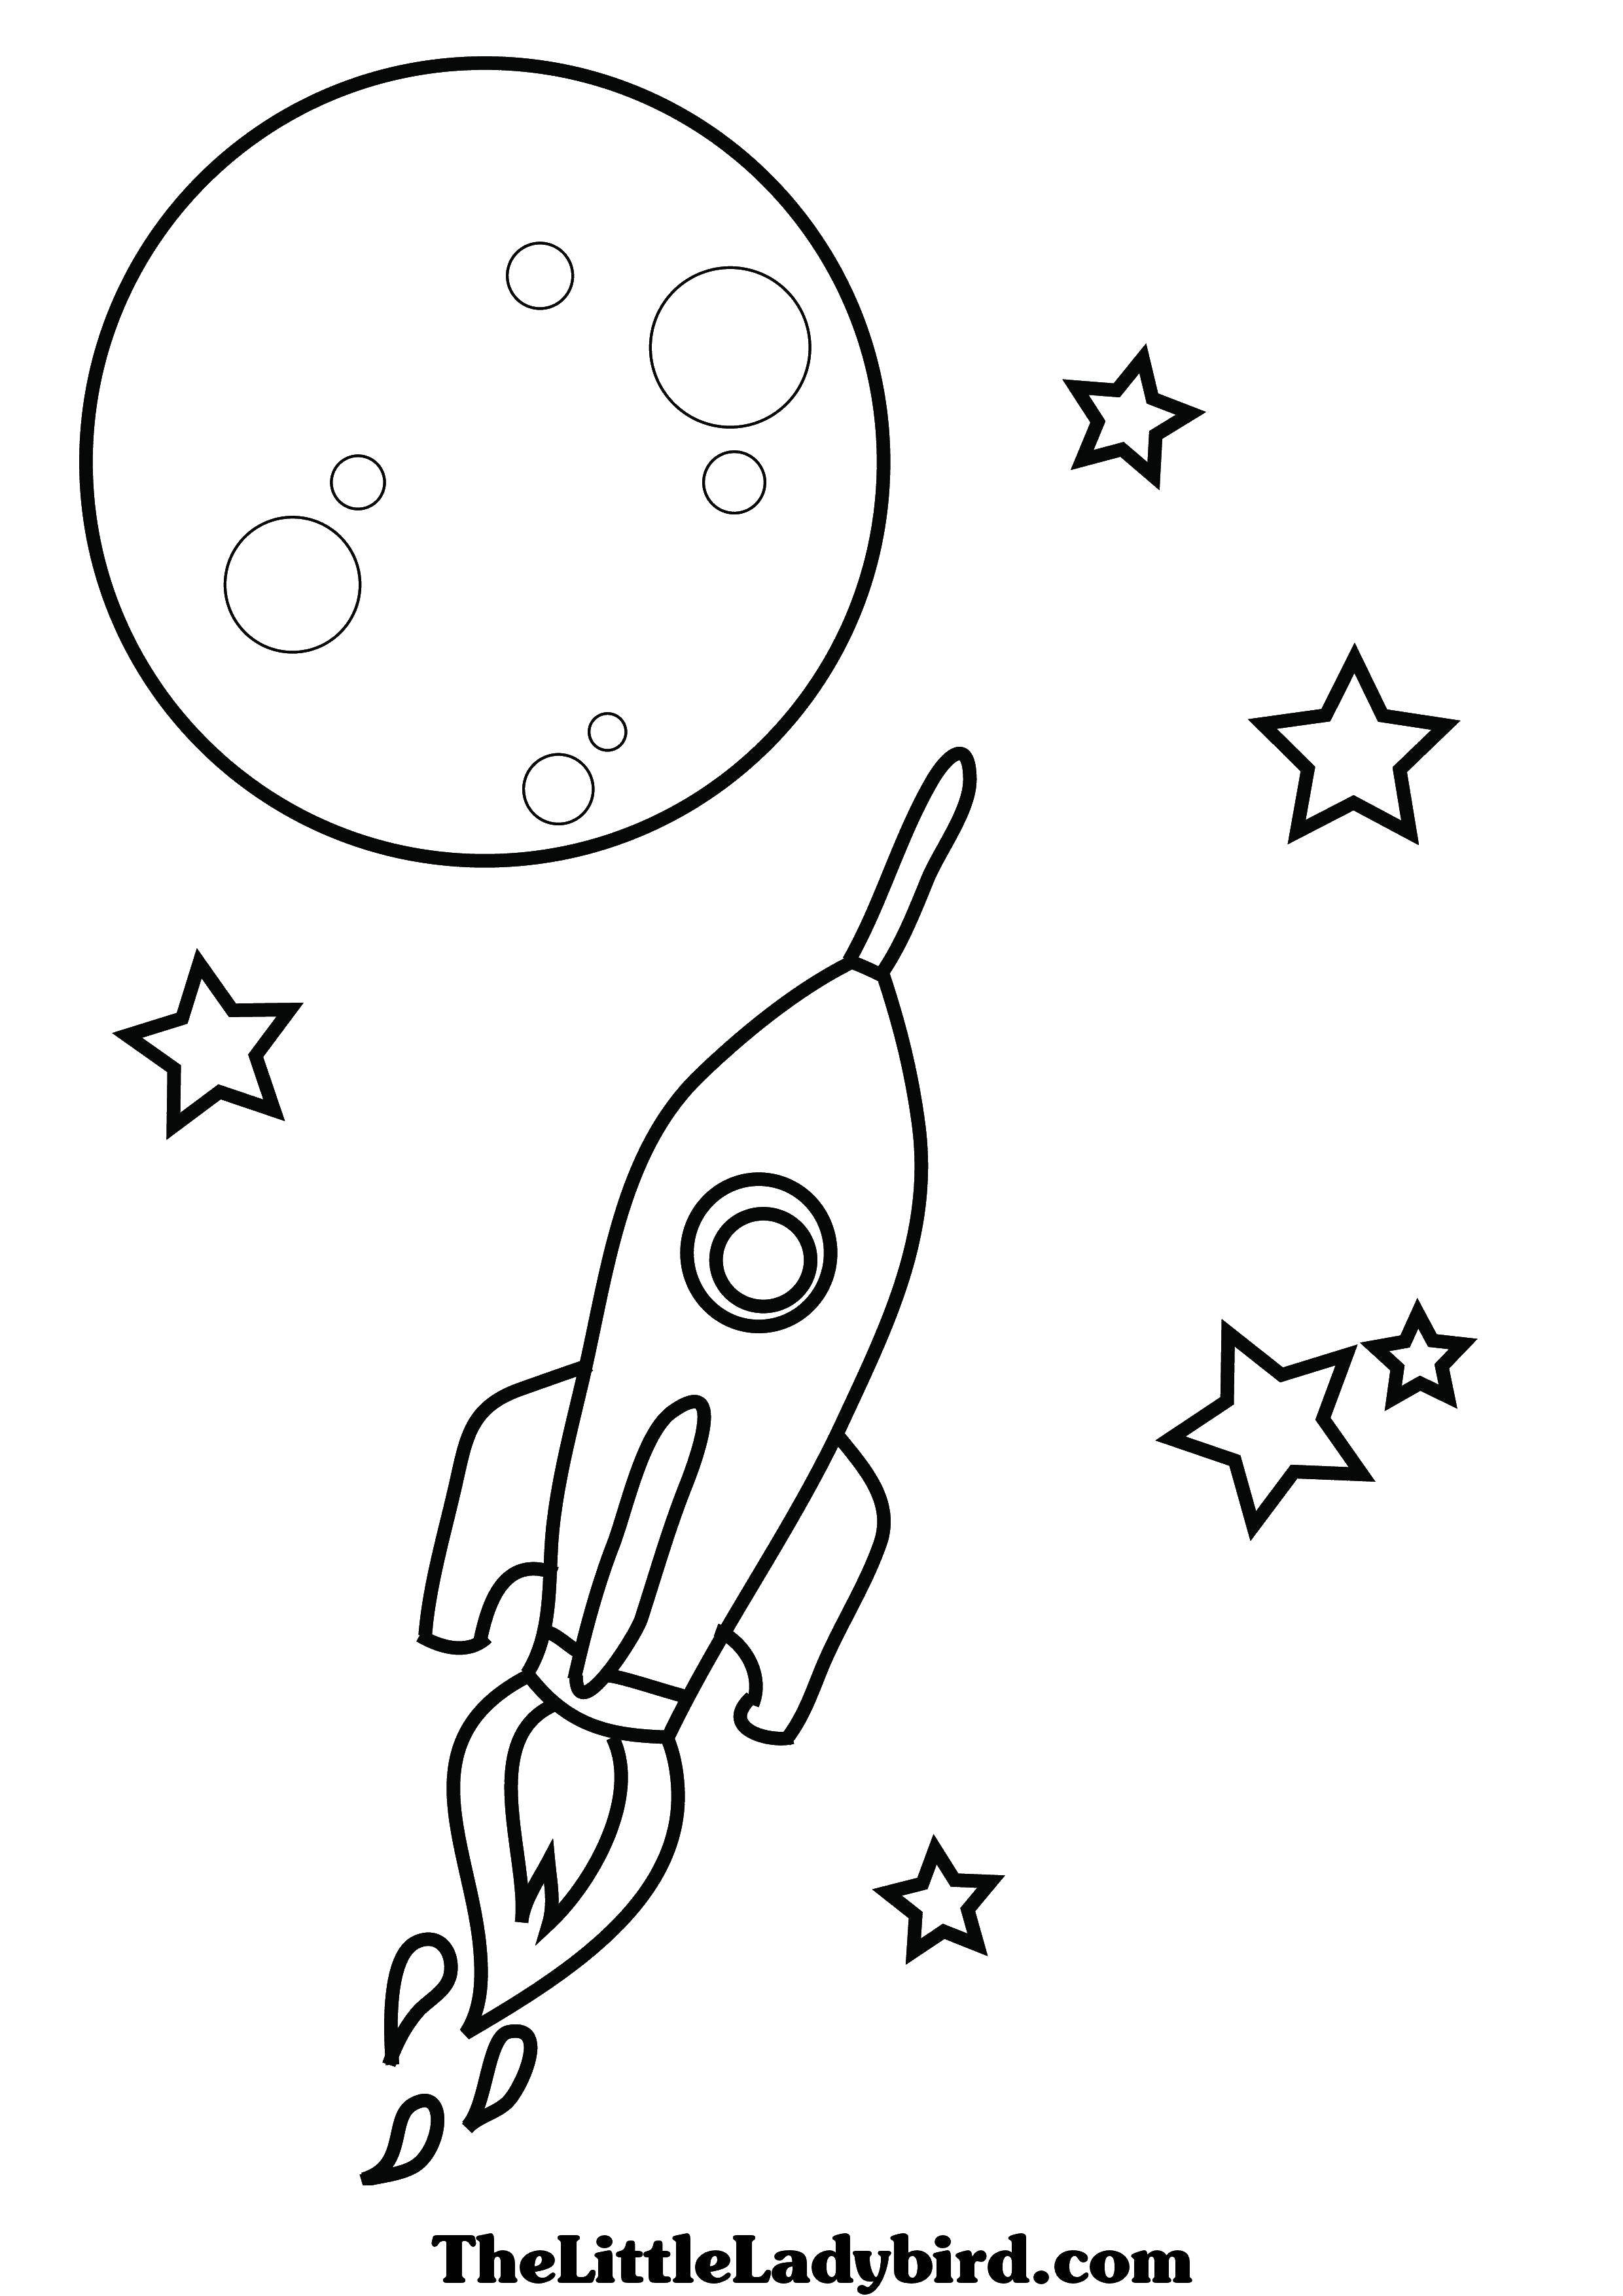 Детские раскраски ко дню космонавтики. Ракета раскраска. Космос раскраска для детей. Ракета раскраска для детей. Раскраска для малышей. Космос.